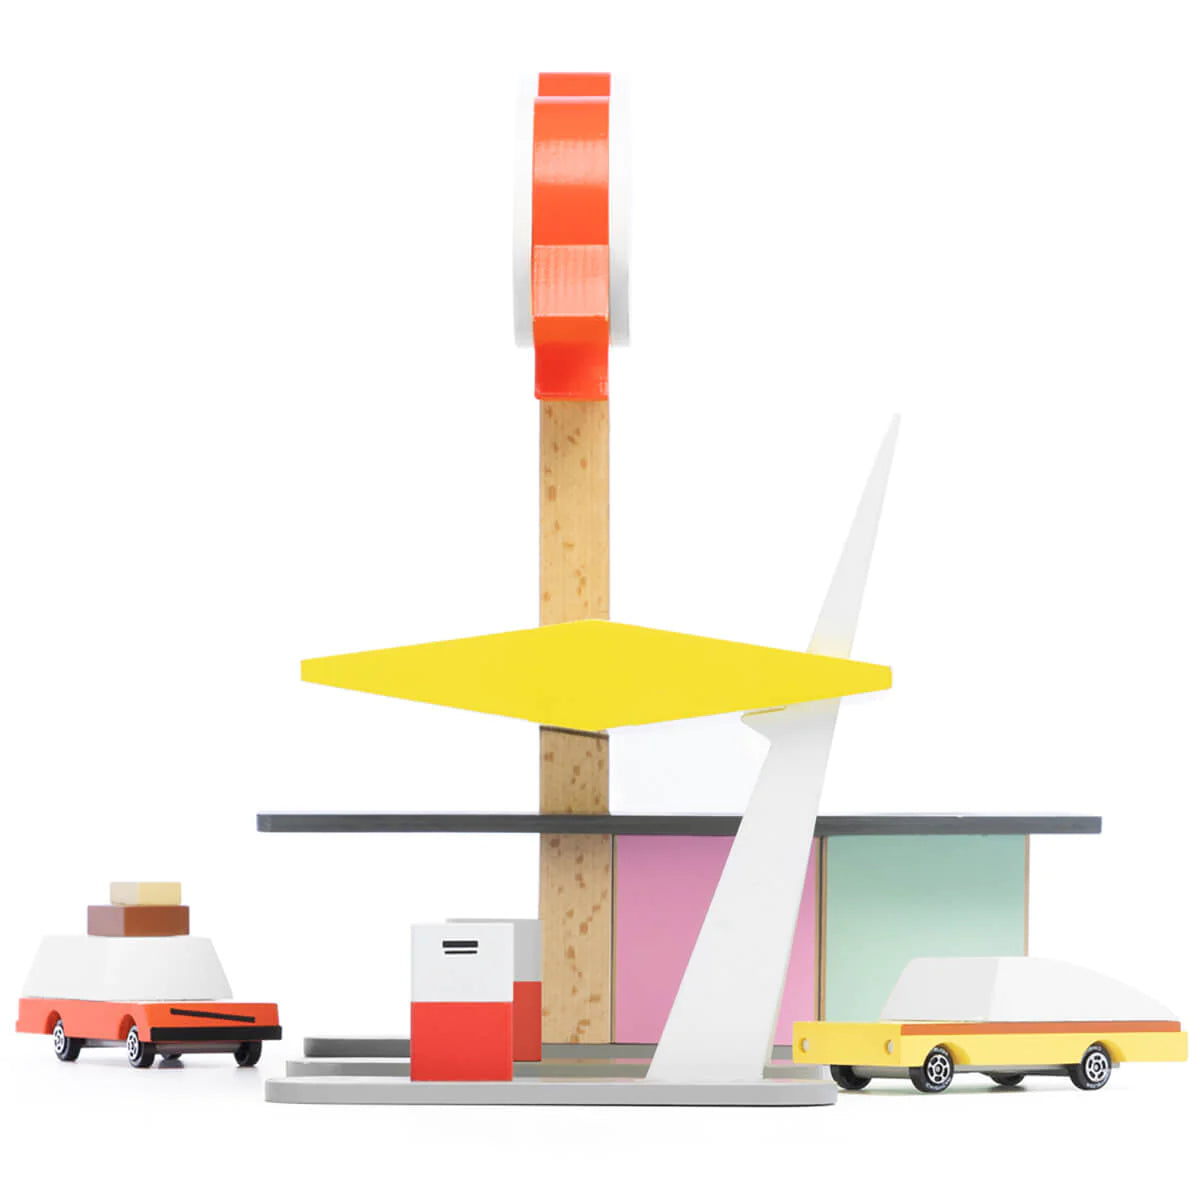 Candylab Rocket Station - Wooden Toy Car Candylab